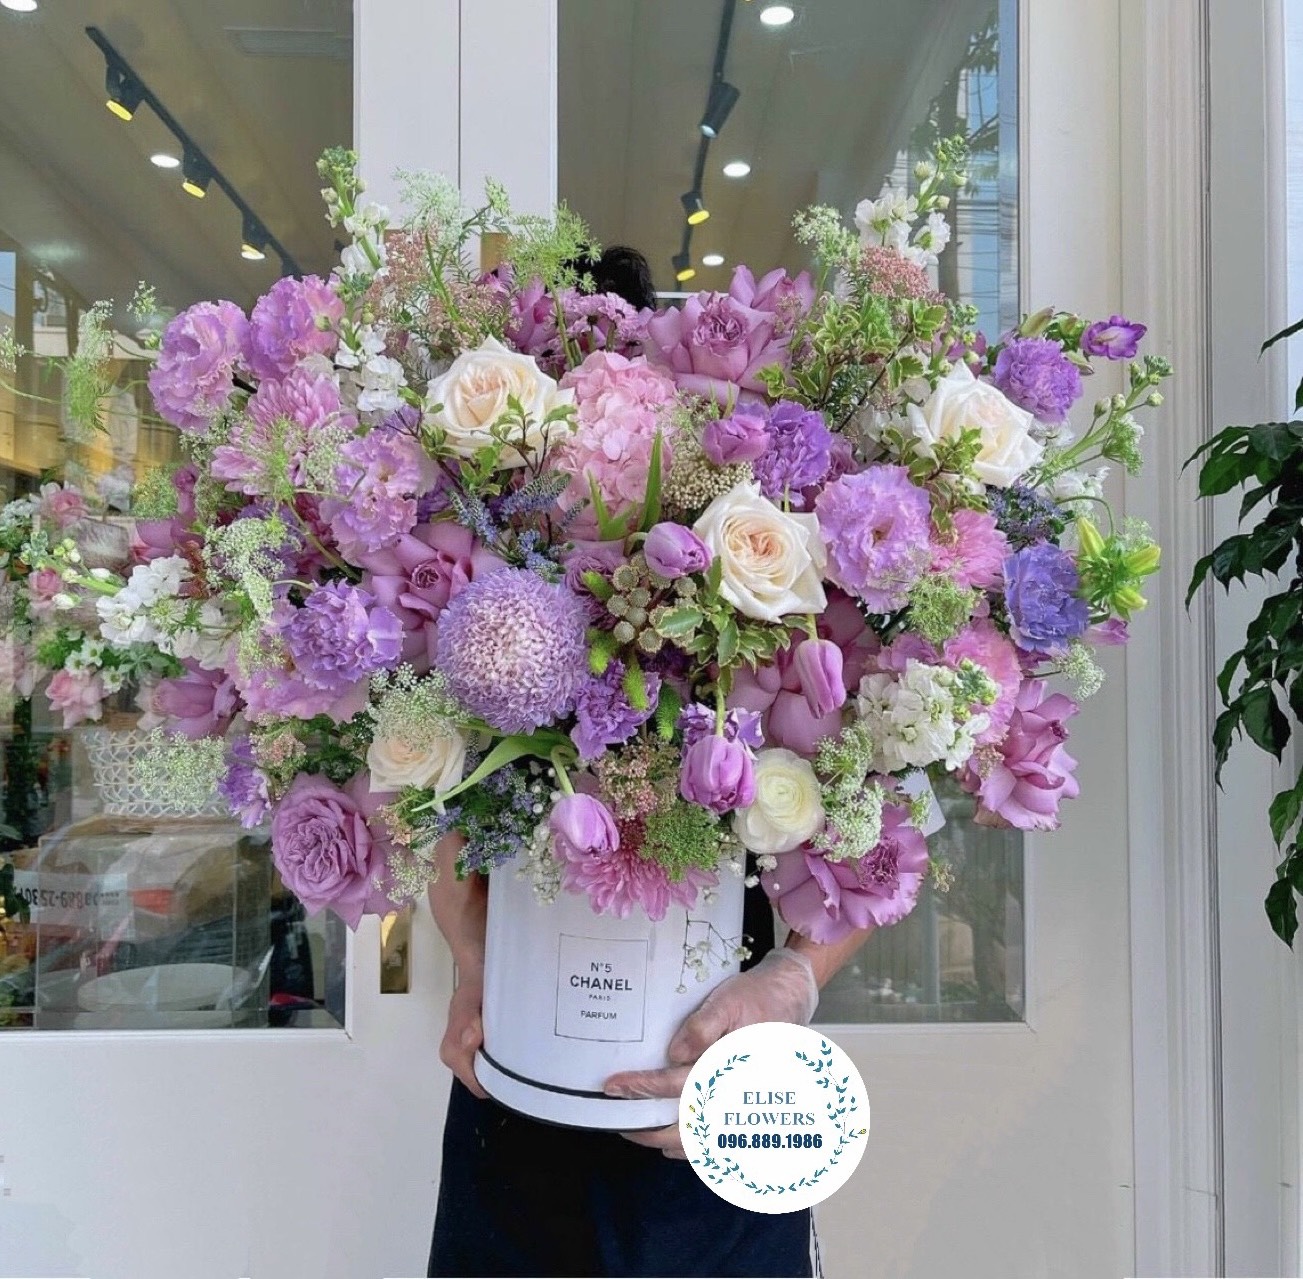 Hoa sinh nhật sang trọng ở Hà Nội - Shop hoa tươi nhập khẩu Hà Nội - Elise Flowers